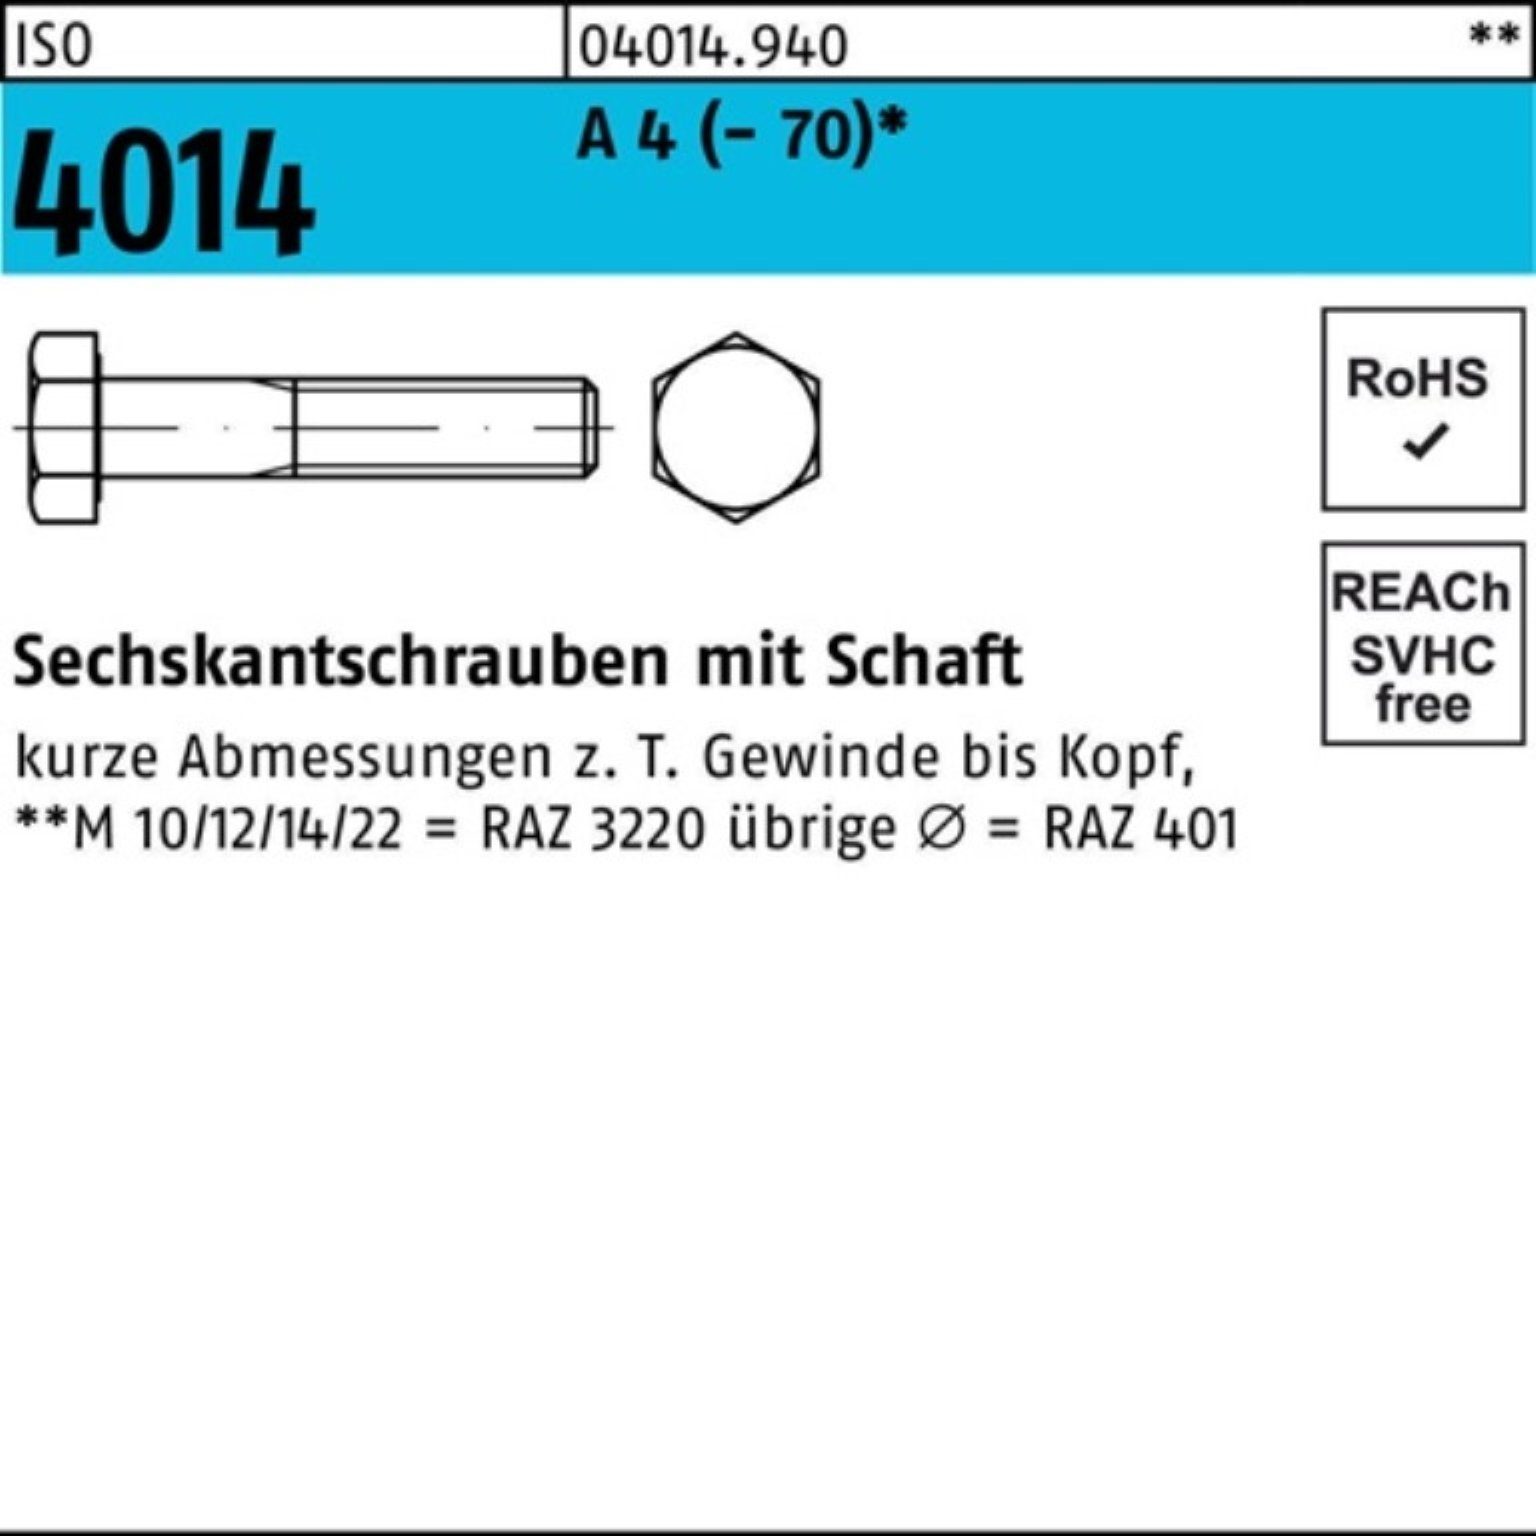 Sechskantschraube St Schaft 4 (70) Bufab 140 Pack Sechskantschraube 100er M16x 1 4014 ISO A